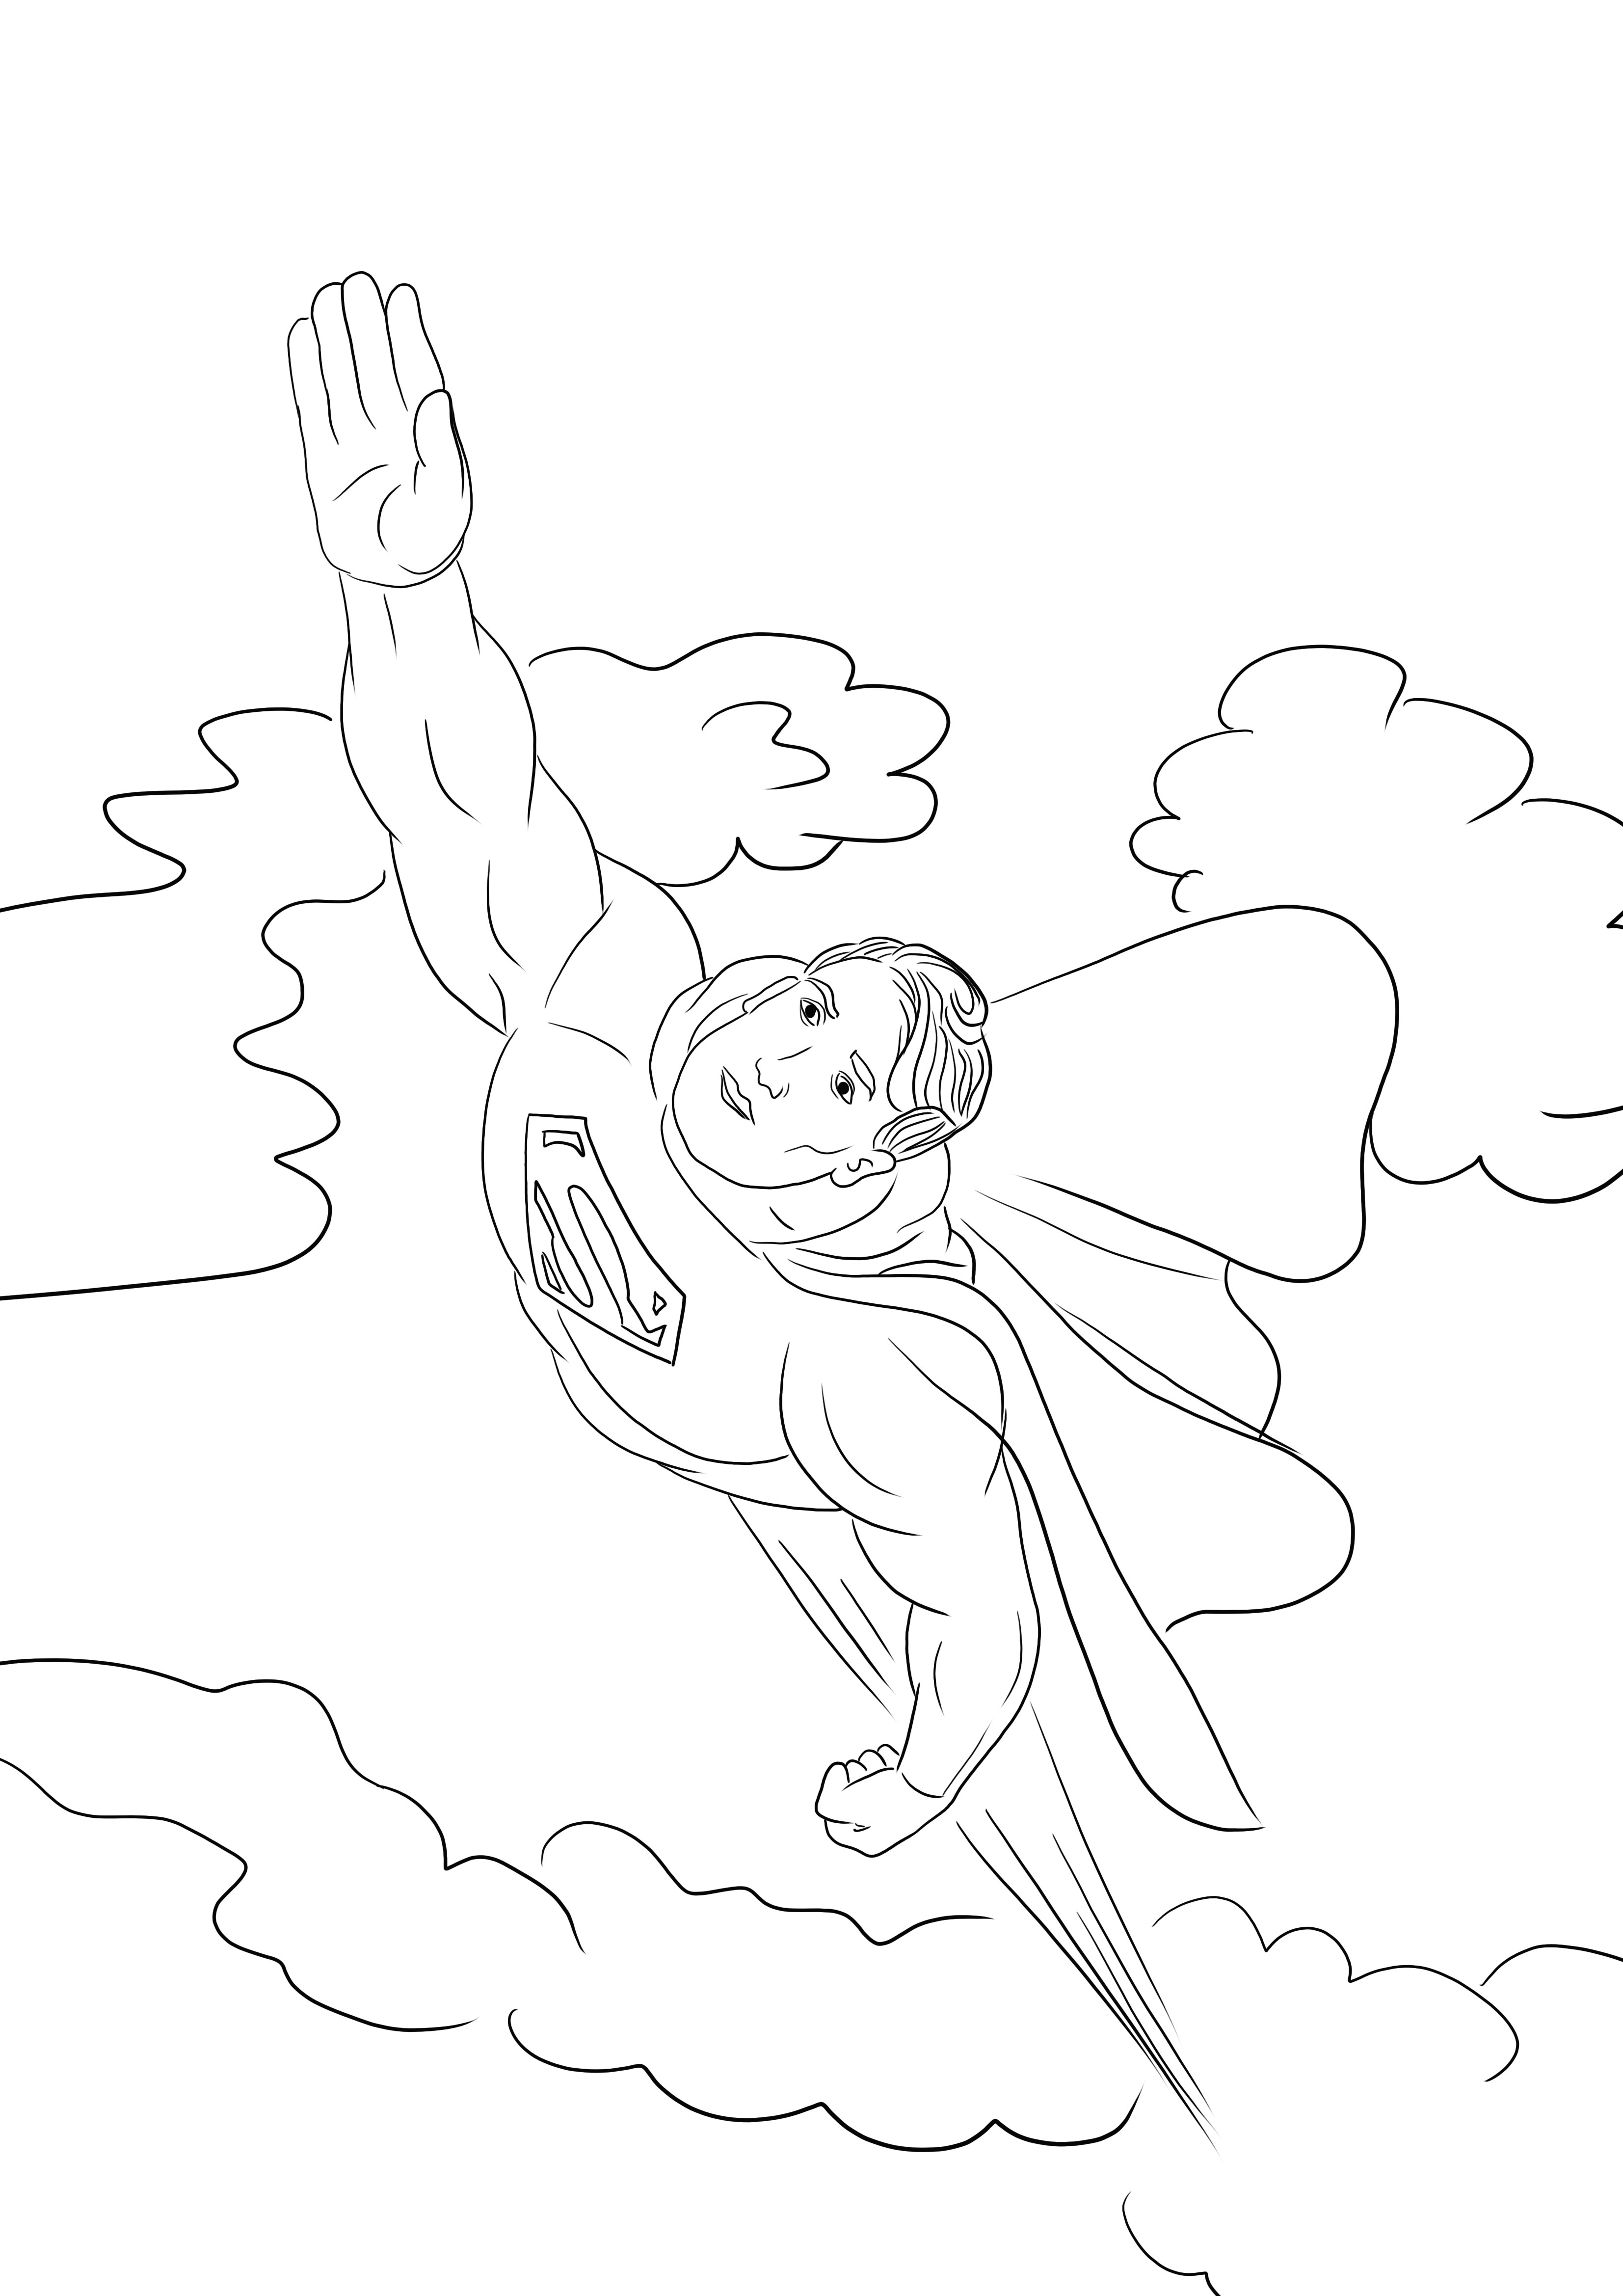 Superman in the sky freebie para imprimir e colorir para crianças de todas as idades